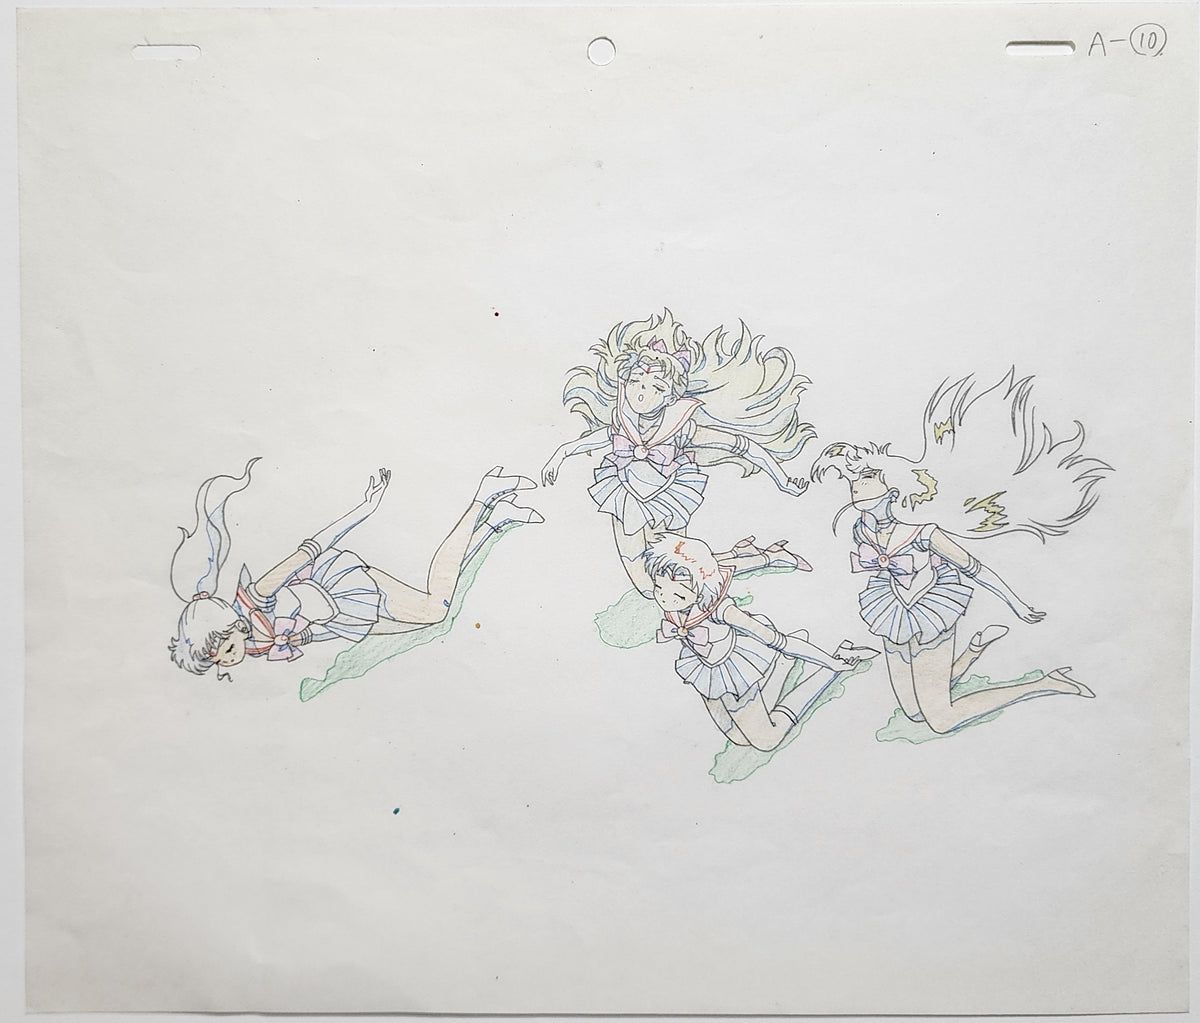 Sailor Moon Animation Production Cel Drawing Genga Douga: 4519